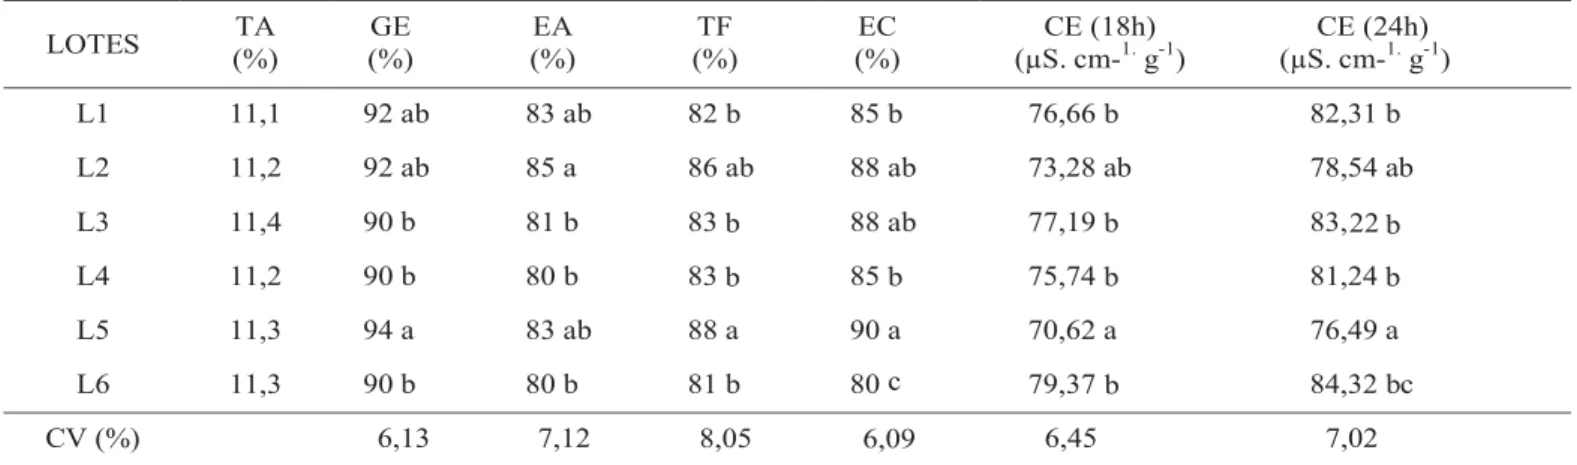 TABELA 1. Caracterização inicial da qualidade de seis lotes de sementes de soja da cultivar BRS 231, quanto ao teor de água (TA), germinação (GE), envelhecimento acelerado (EA), teste de frio sem solo (TF), emergência das plântulas em campo (EC) e condutiv